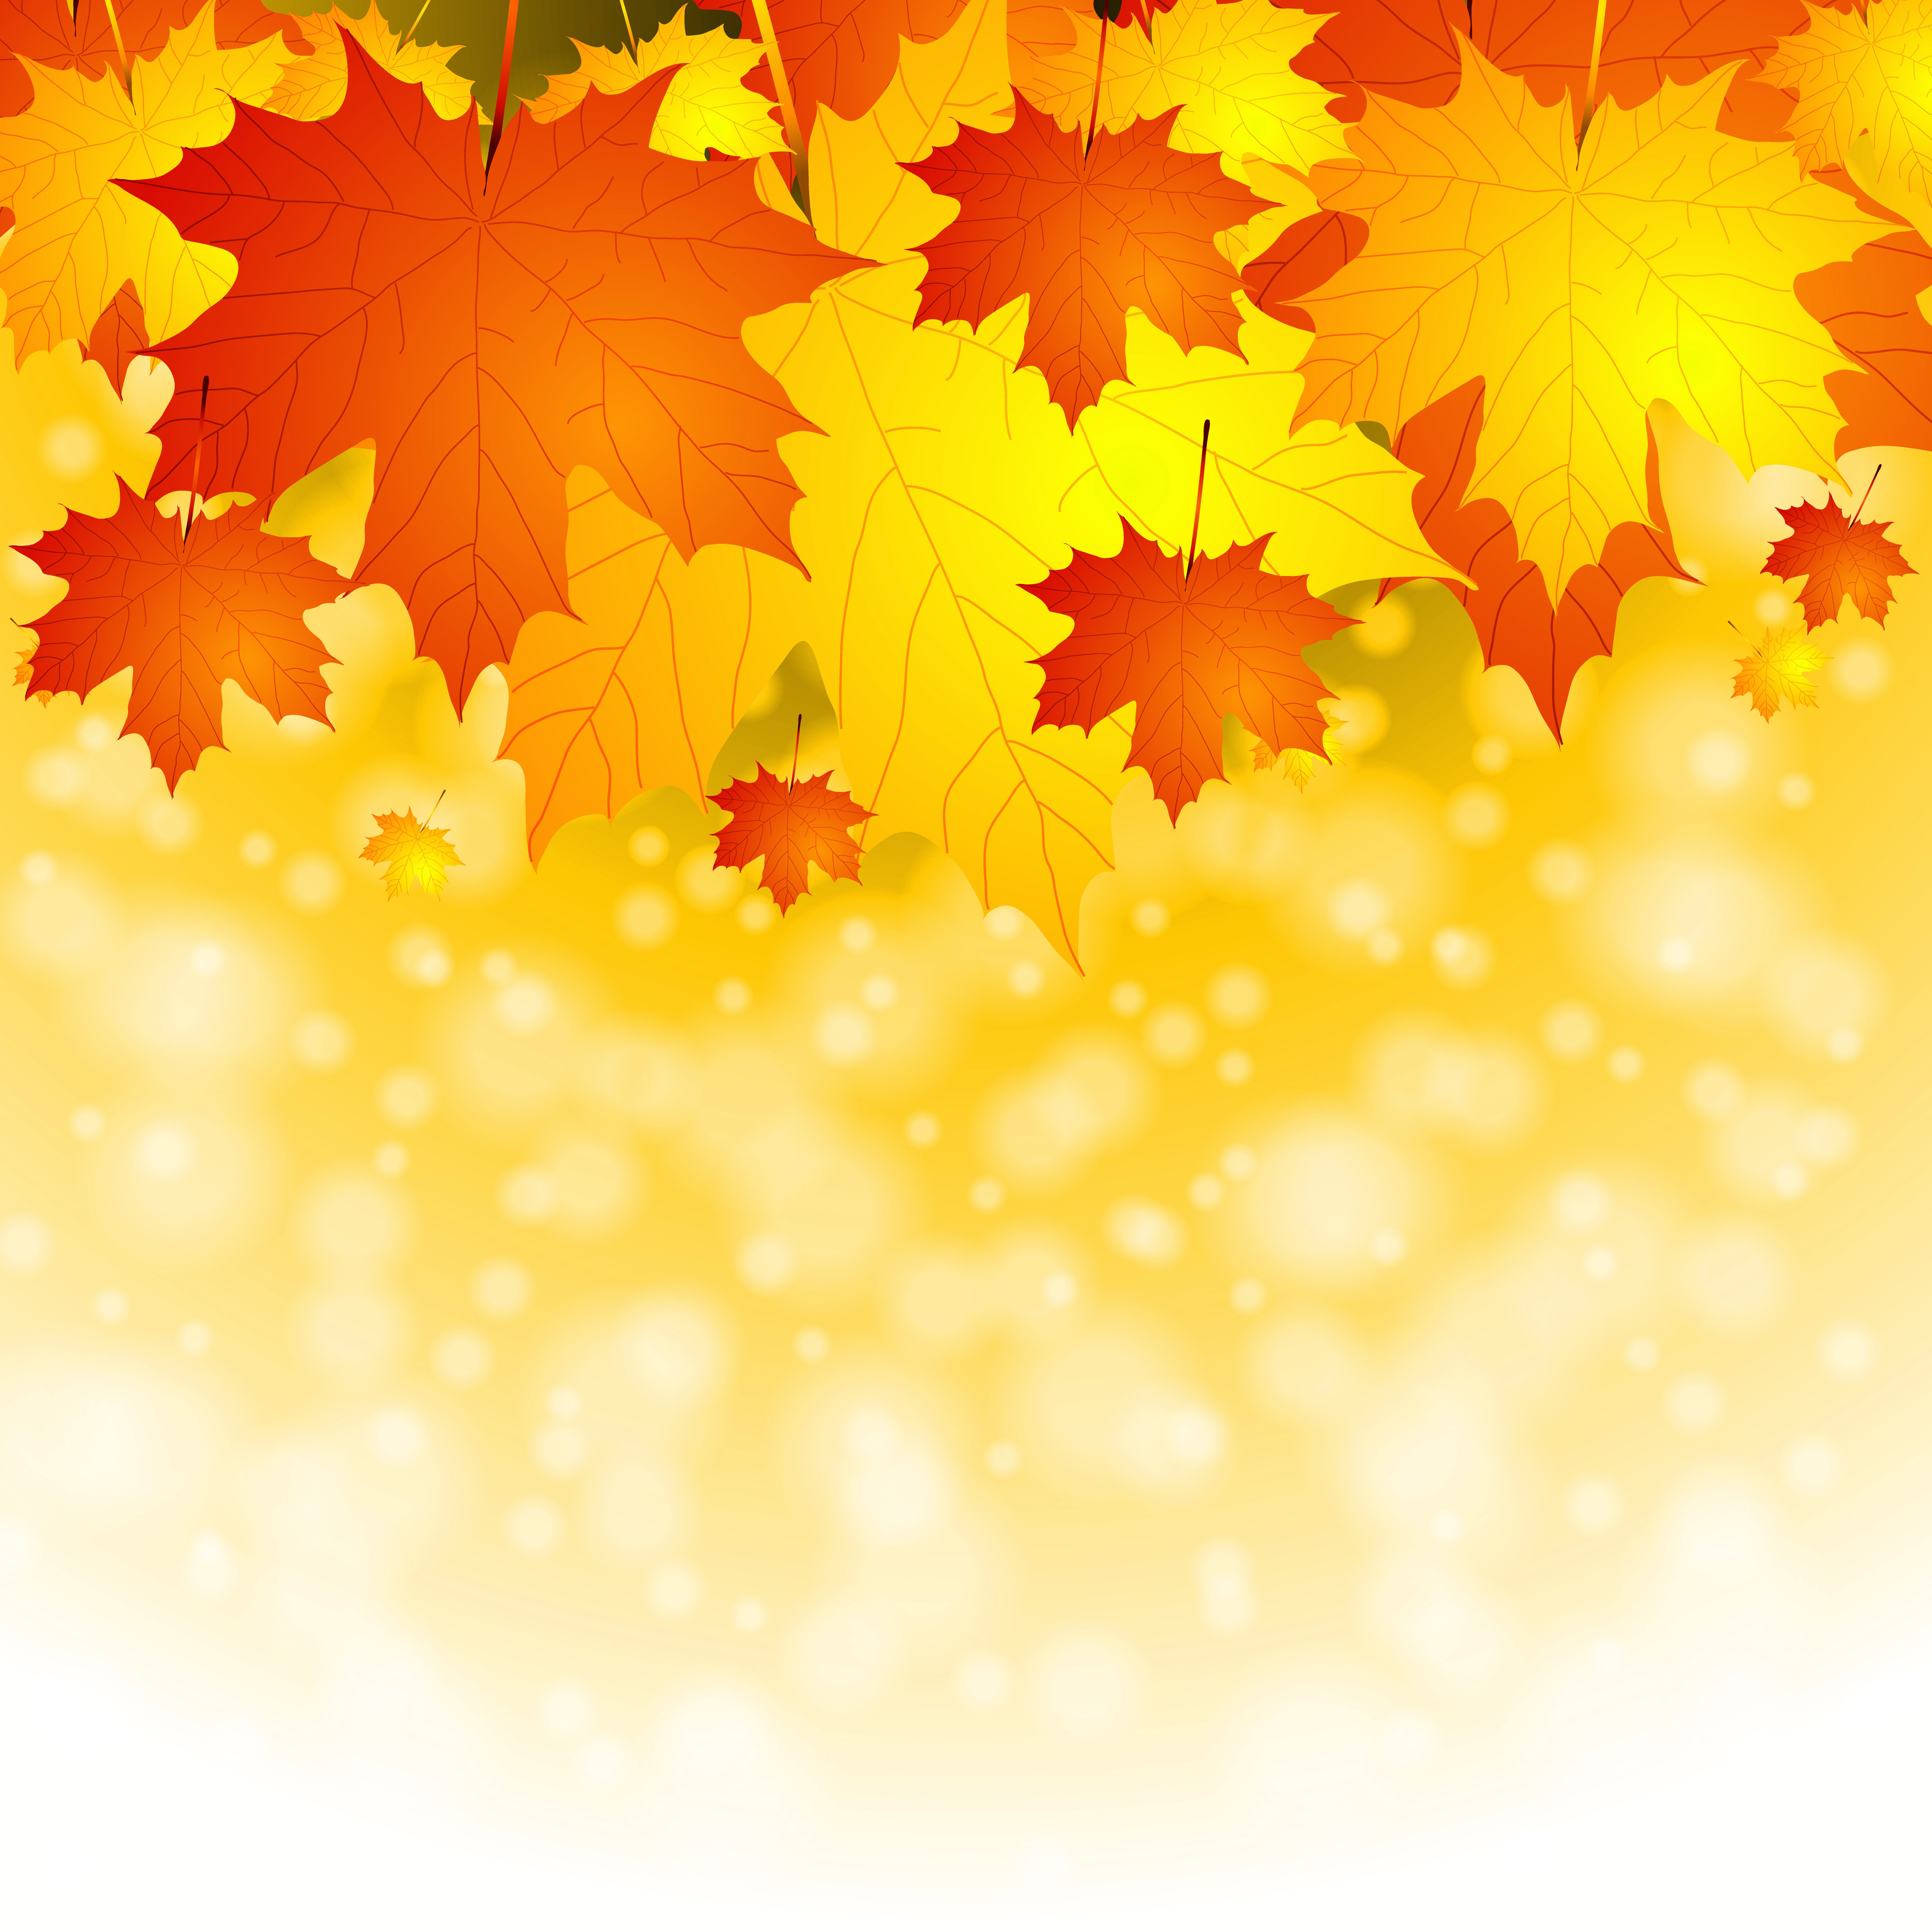 autumn backgrounds clipart